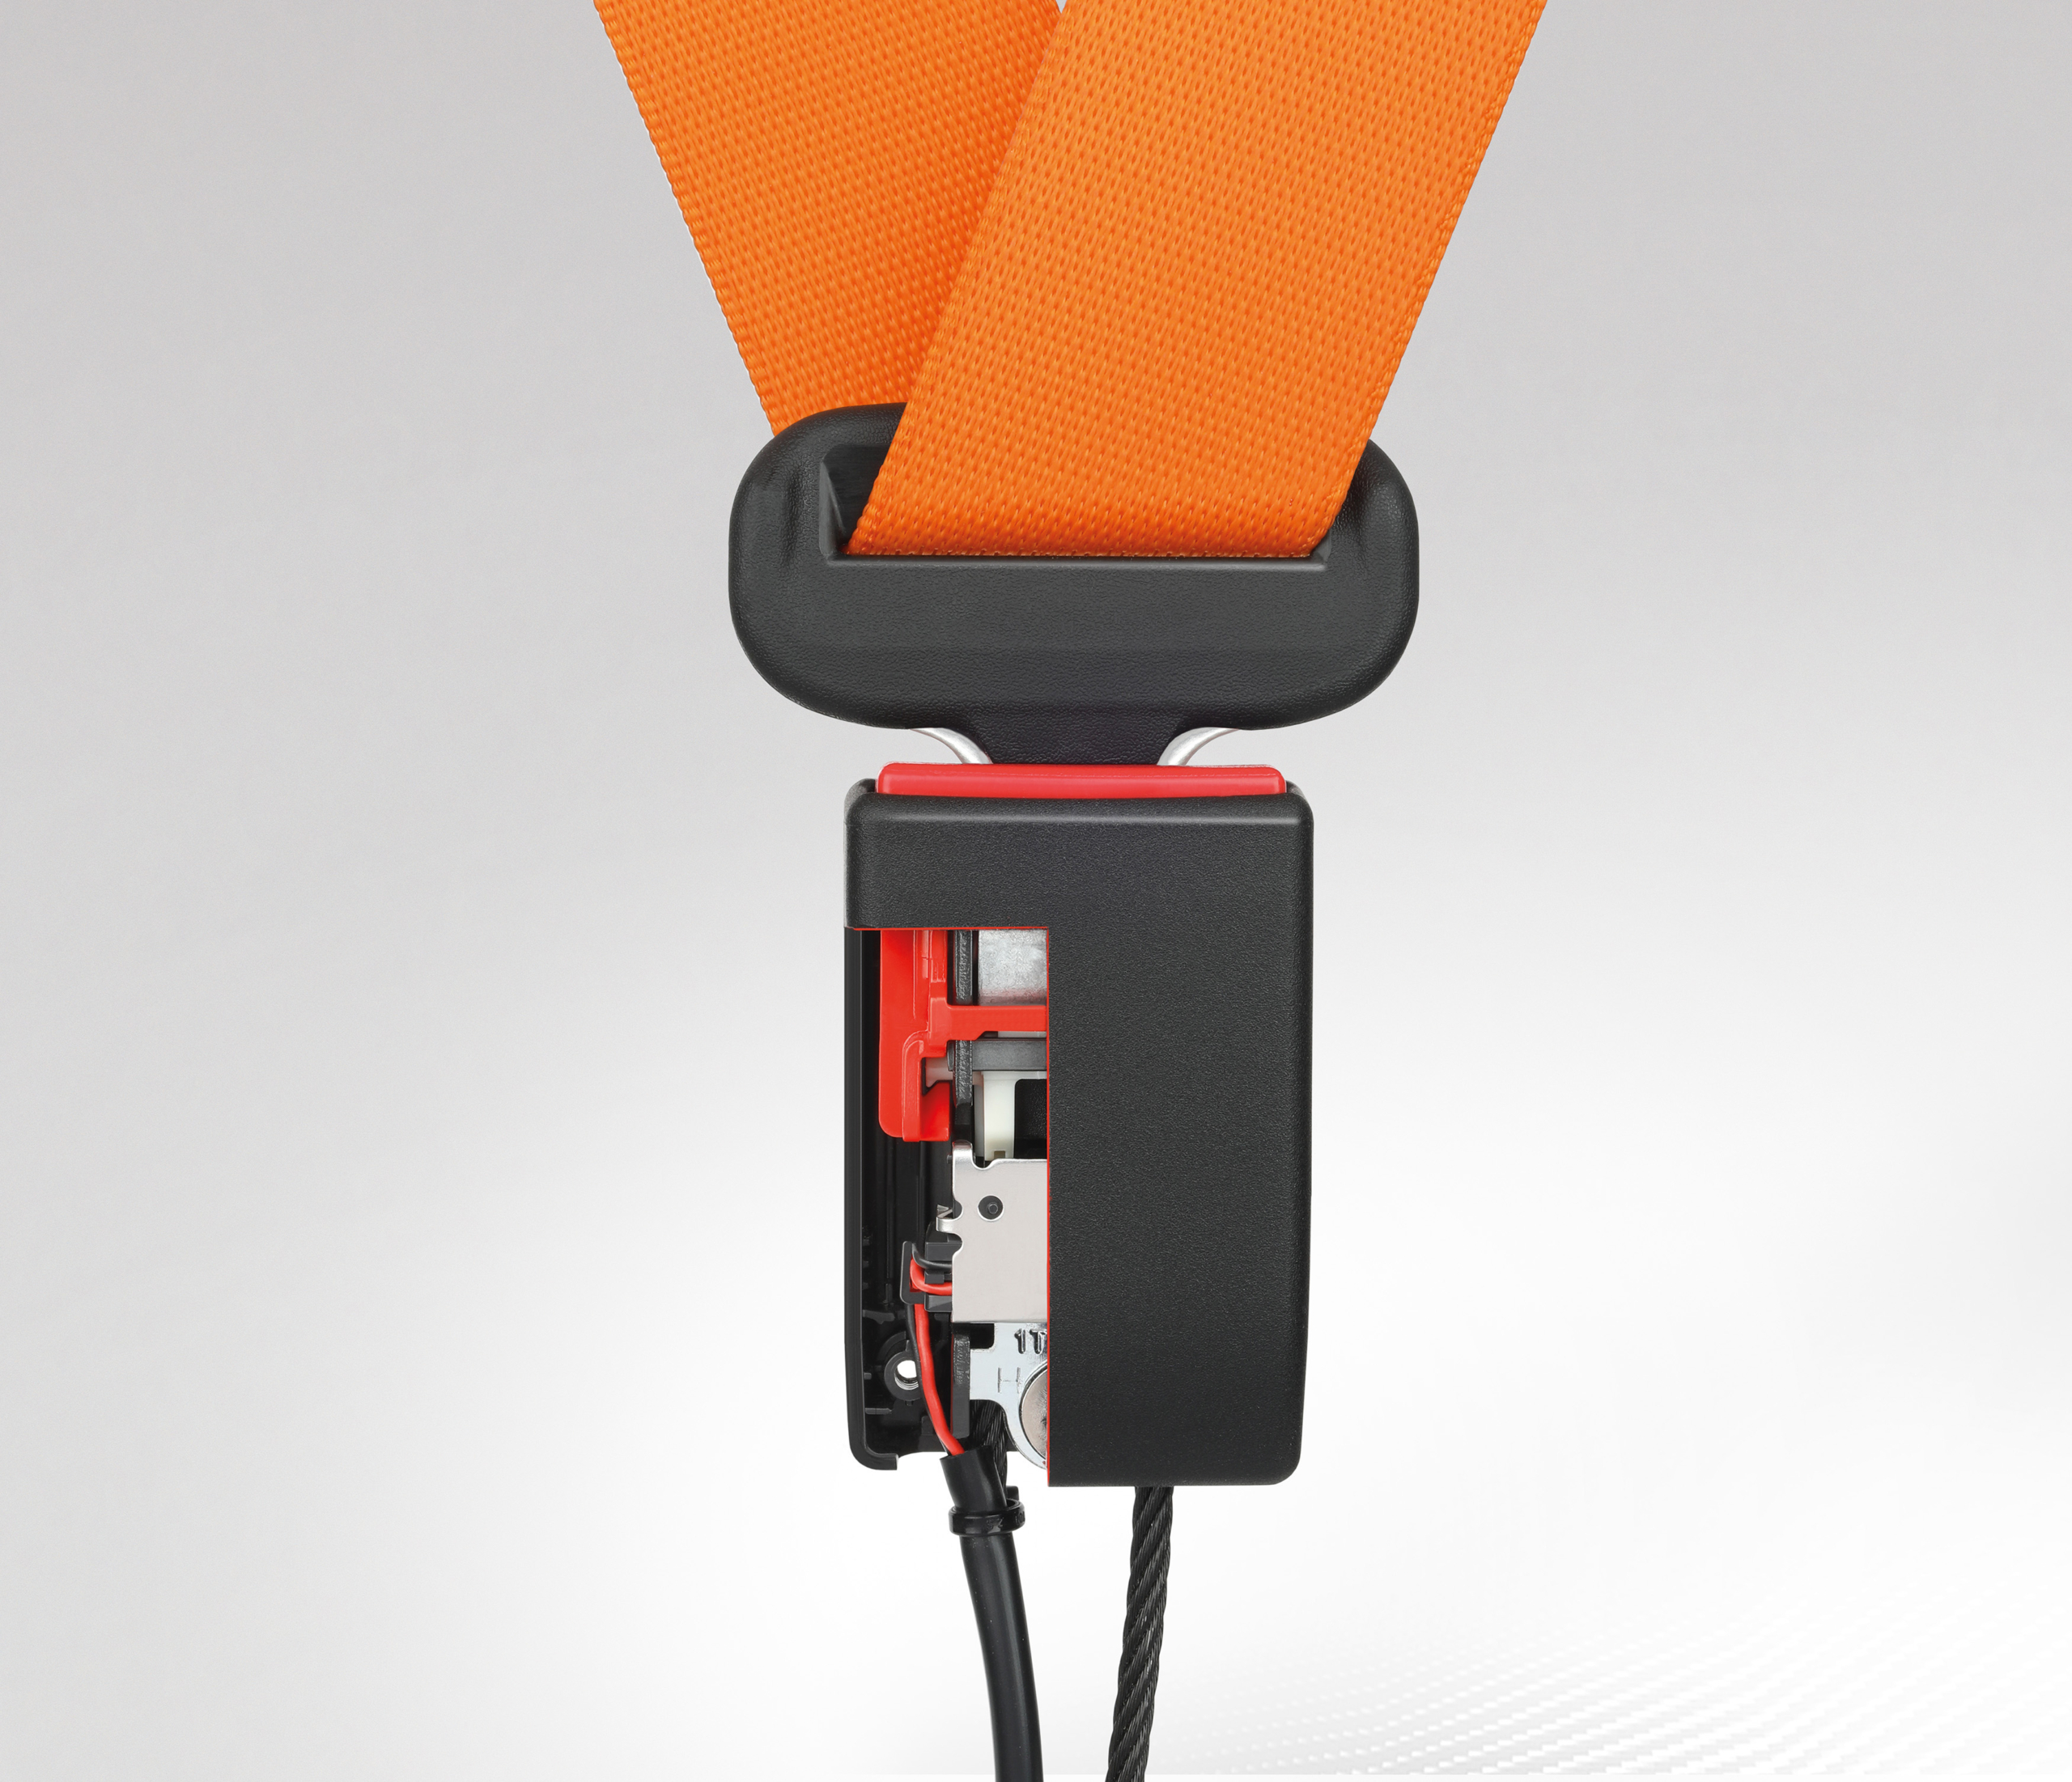 Seatbelt Buckle | Joyson Safety Systems © 2020